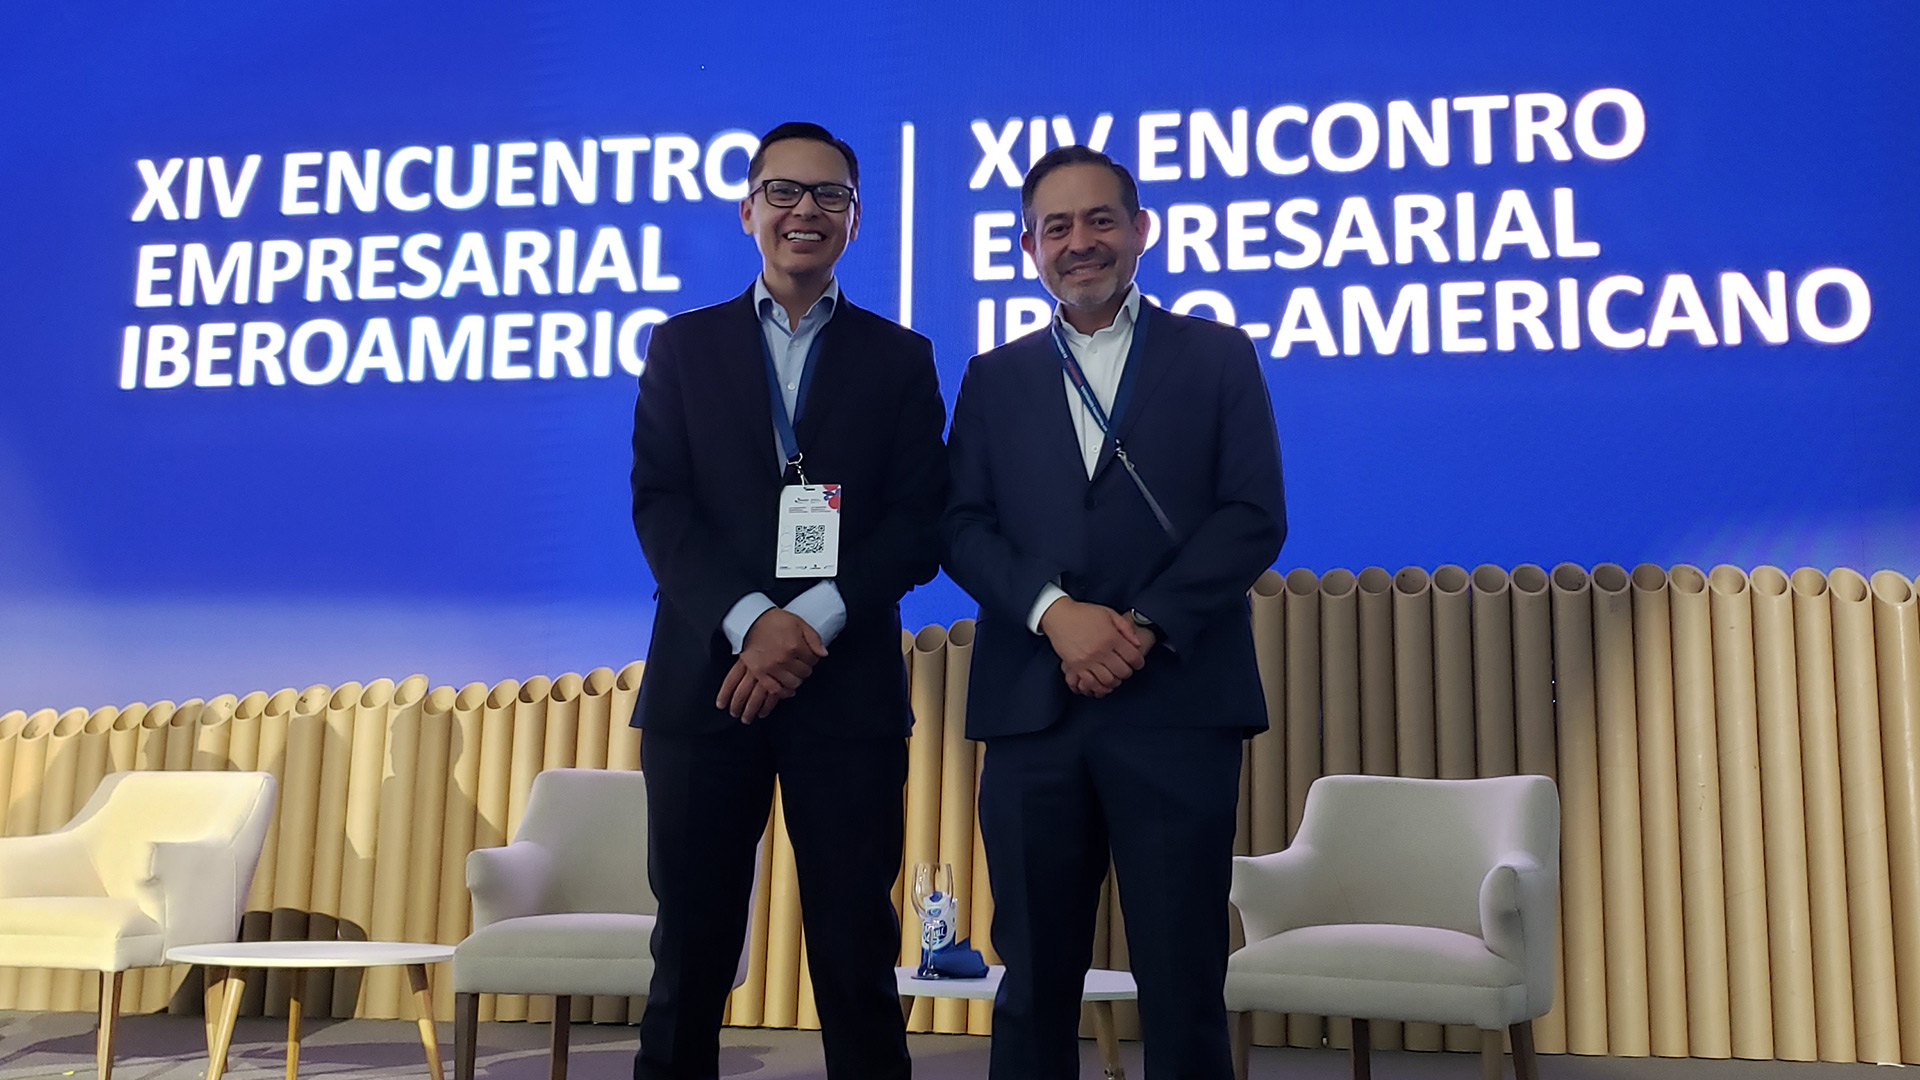 AAA finanzas corporativas en encuentro empresarial iberoamericano